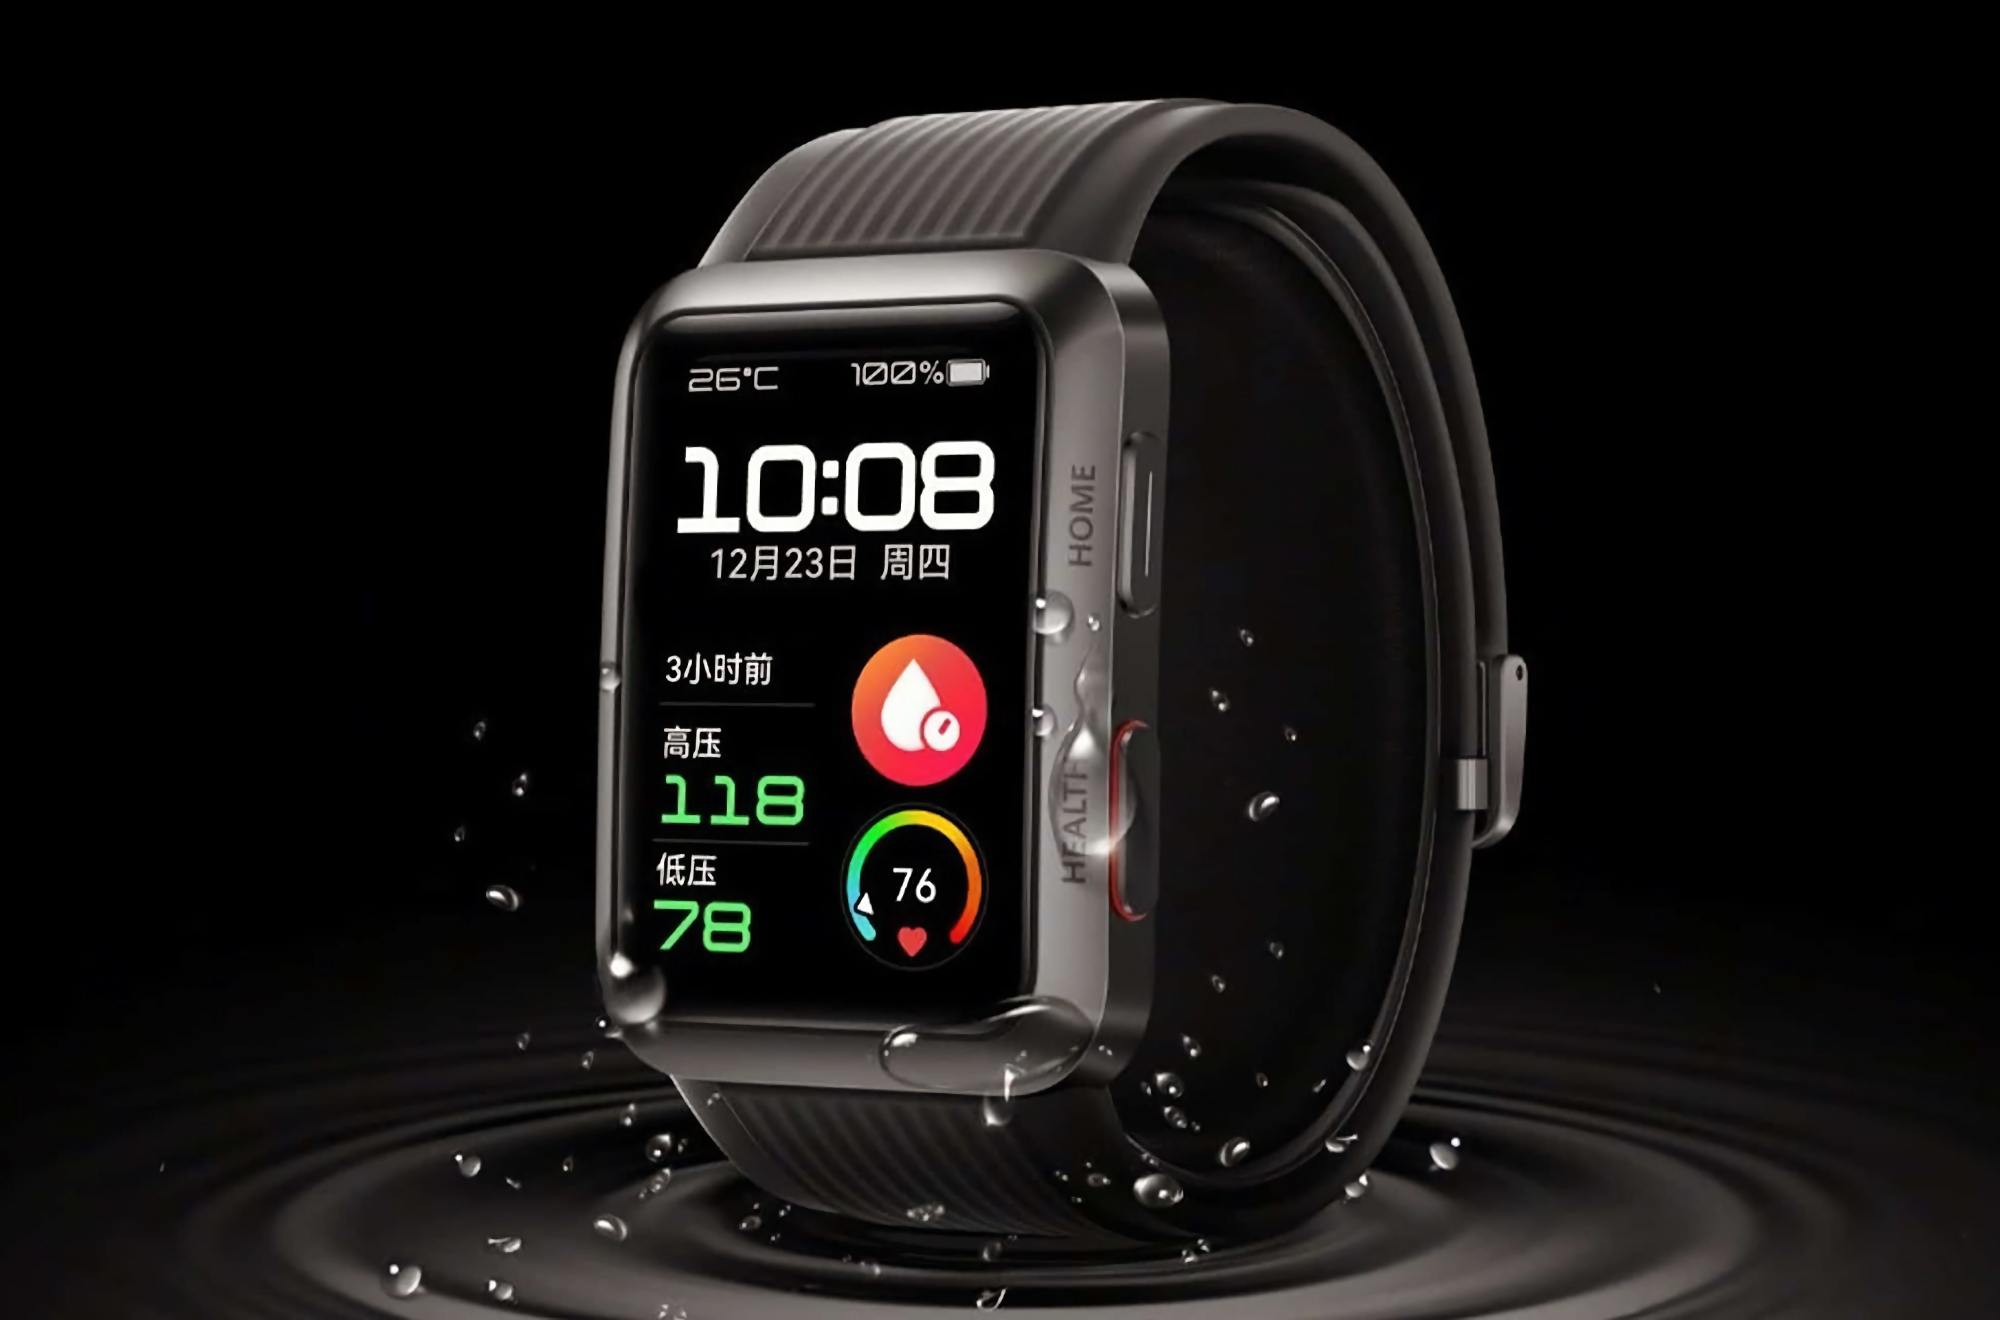 Gerücht: Huawei arbeitet an einer Watch D2 Smartwatch mit Blutdruckmessfunktion